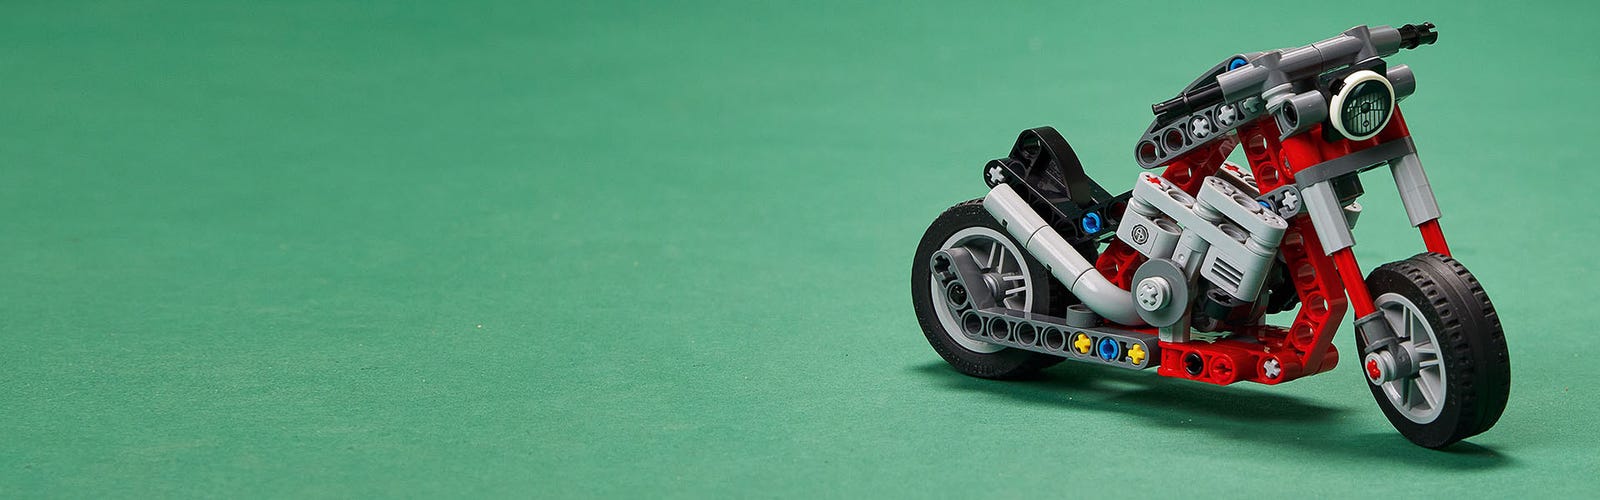 Lego 42132 la moto, maquette a construire 2 en 1, jouet de